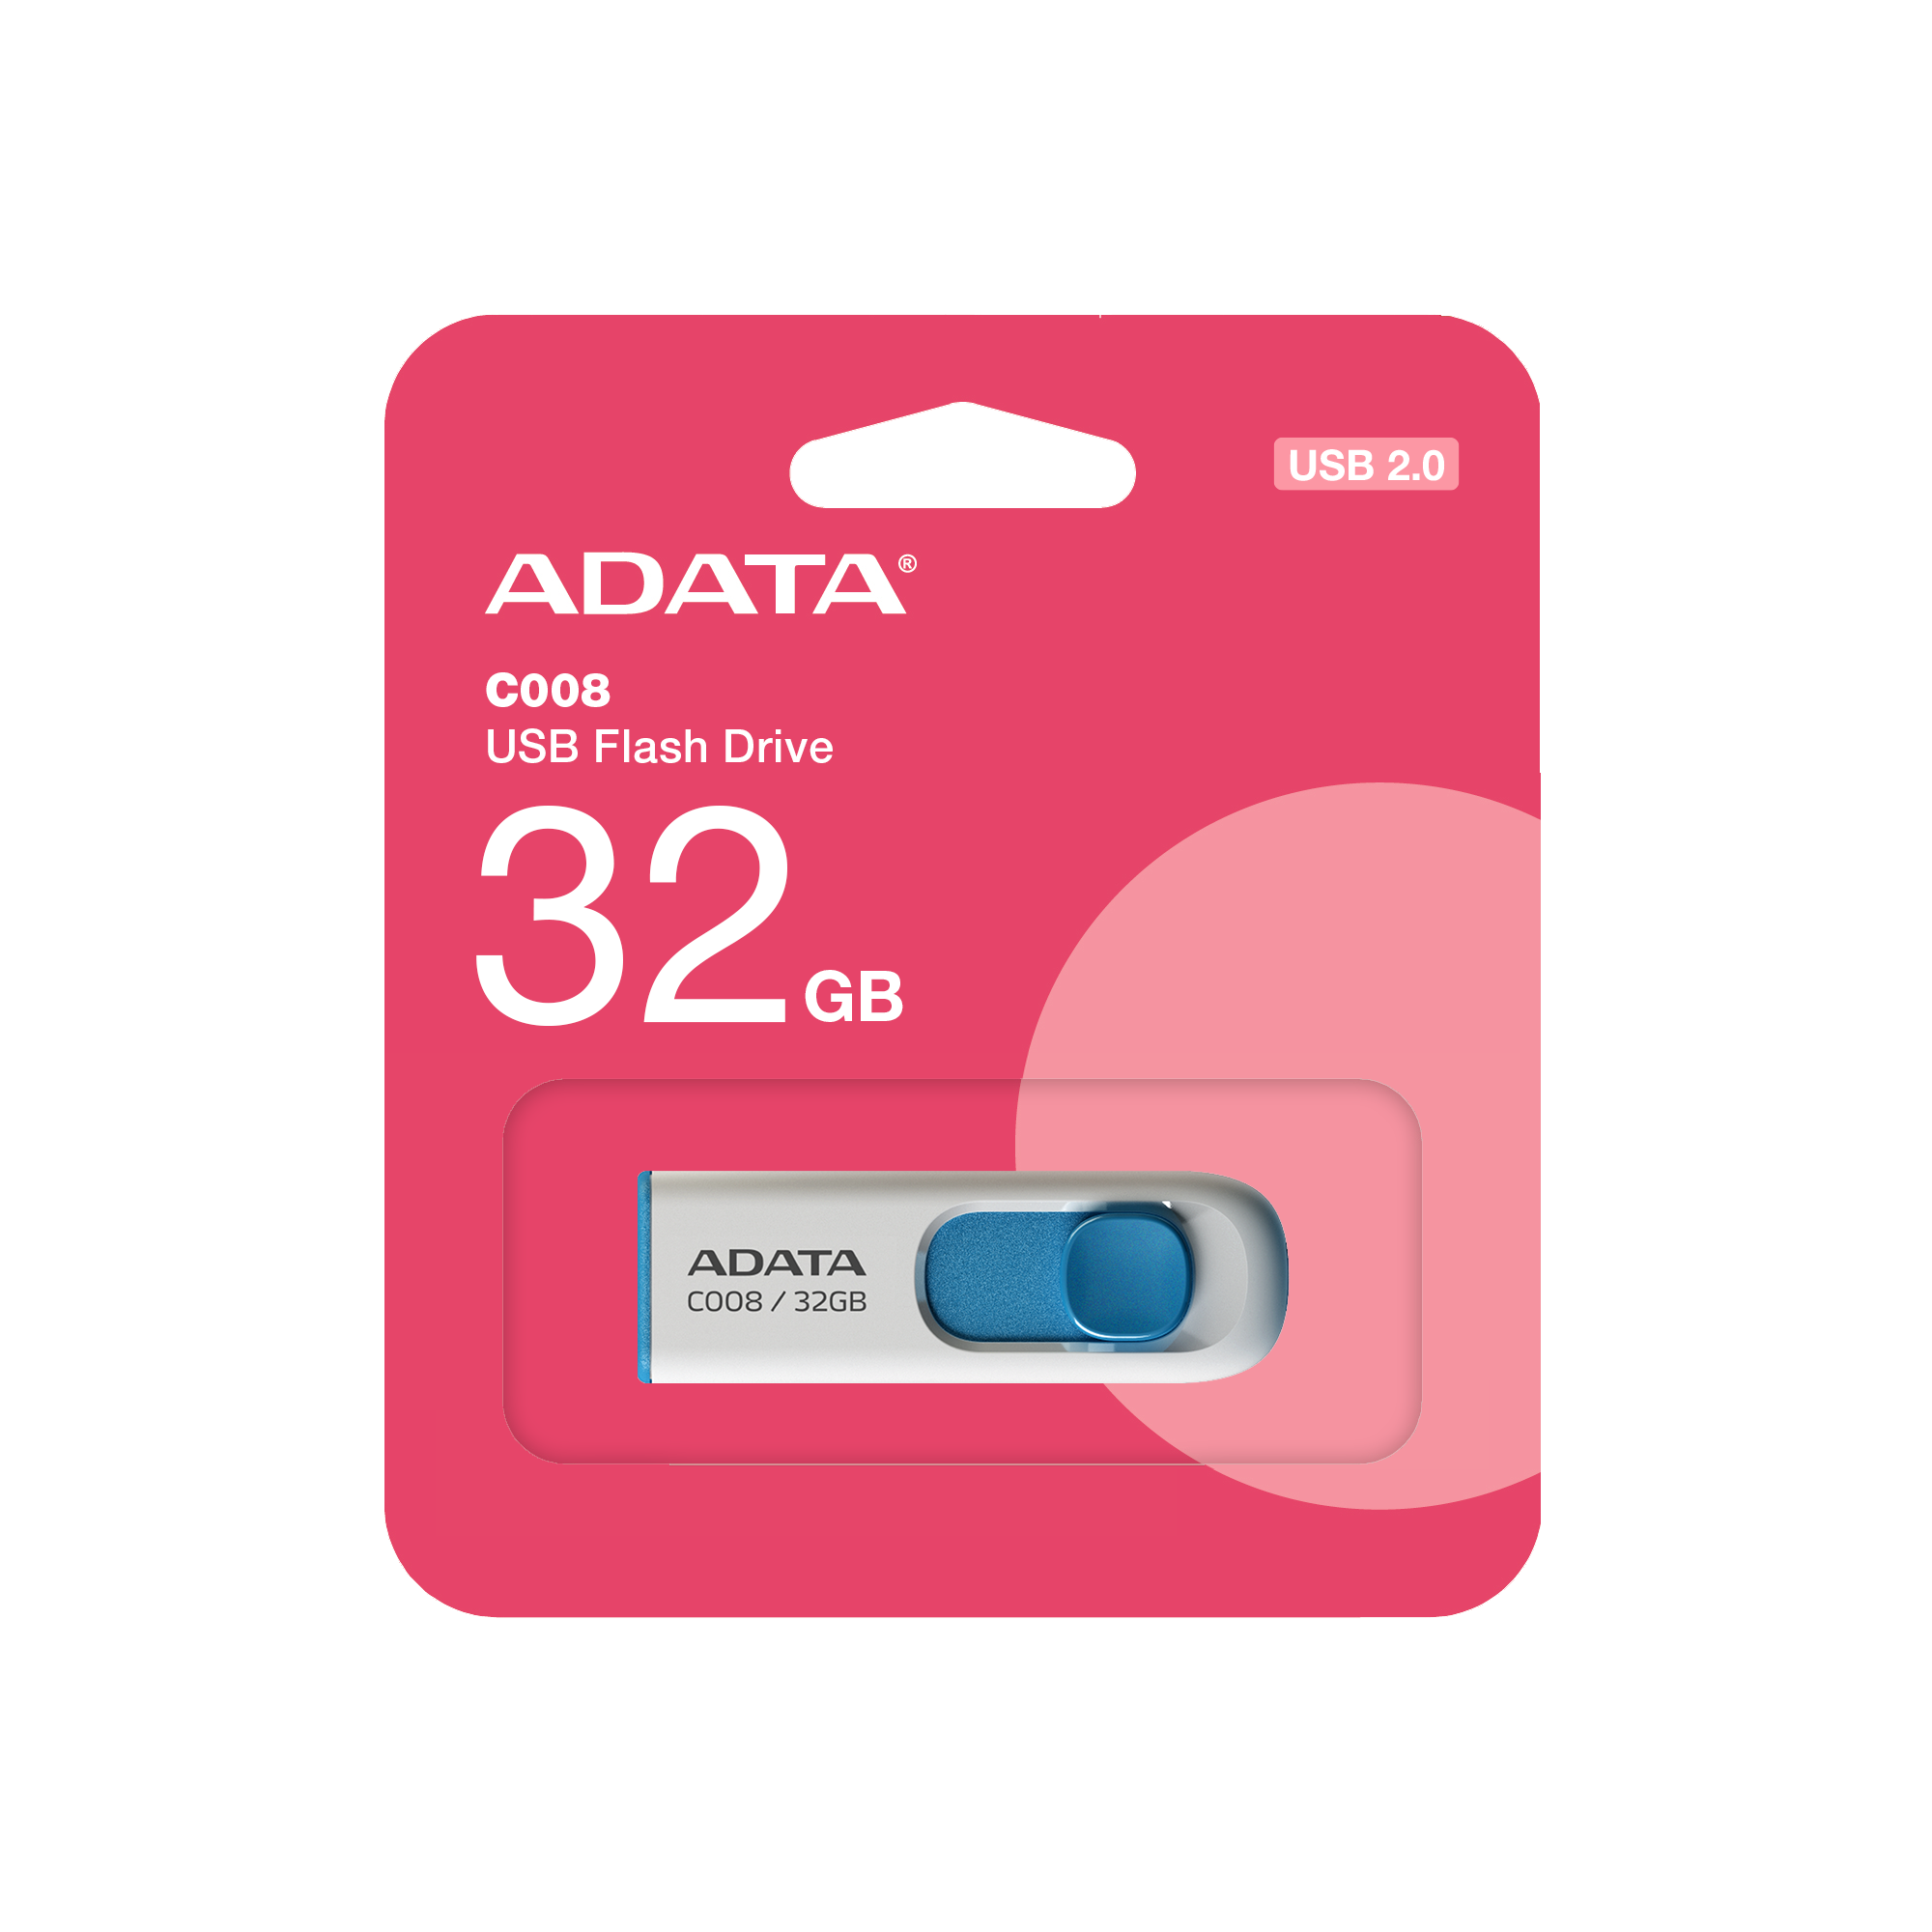 MEMORIA USB ADATA 32GB C008